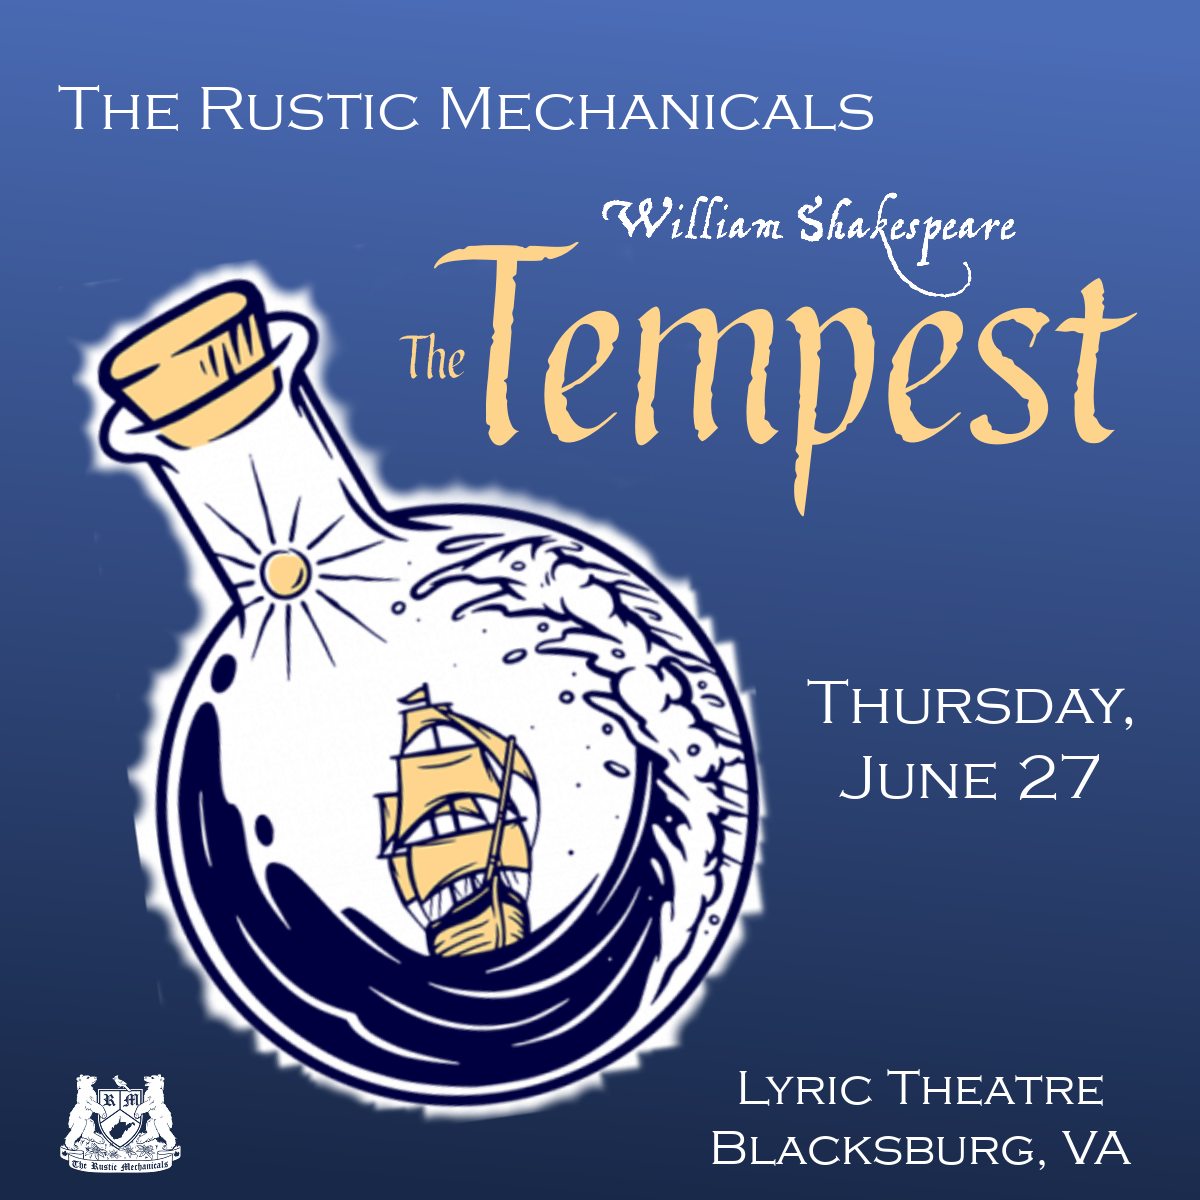 William Shakespeare’s The Tempest